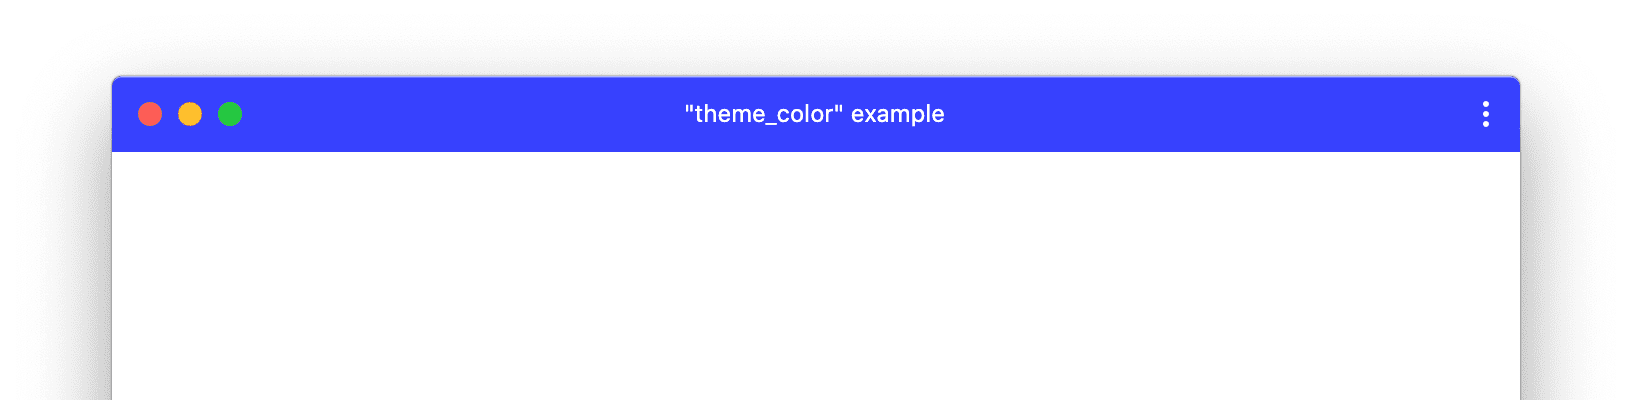 Ví dụ về cửa sổ PWA có theme_color tuỳ chỉnh.